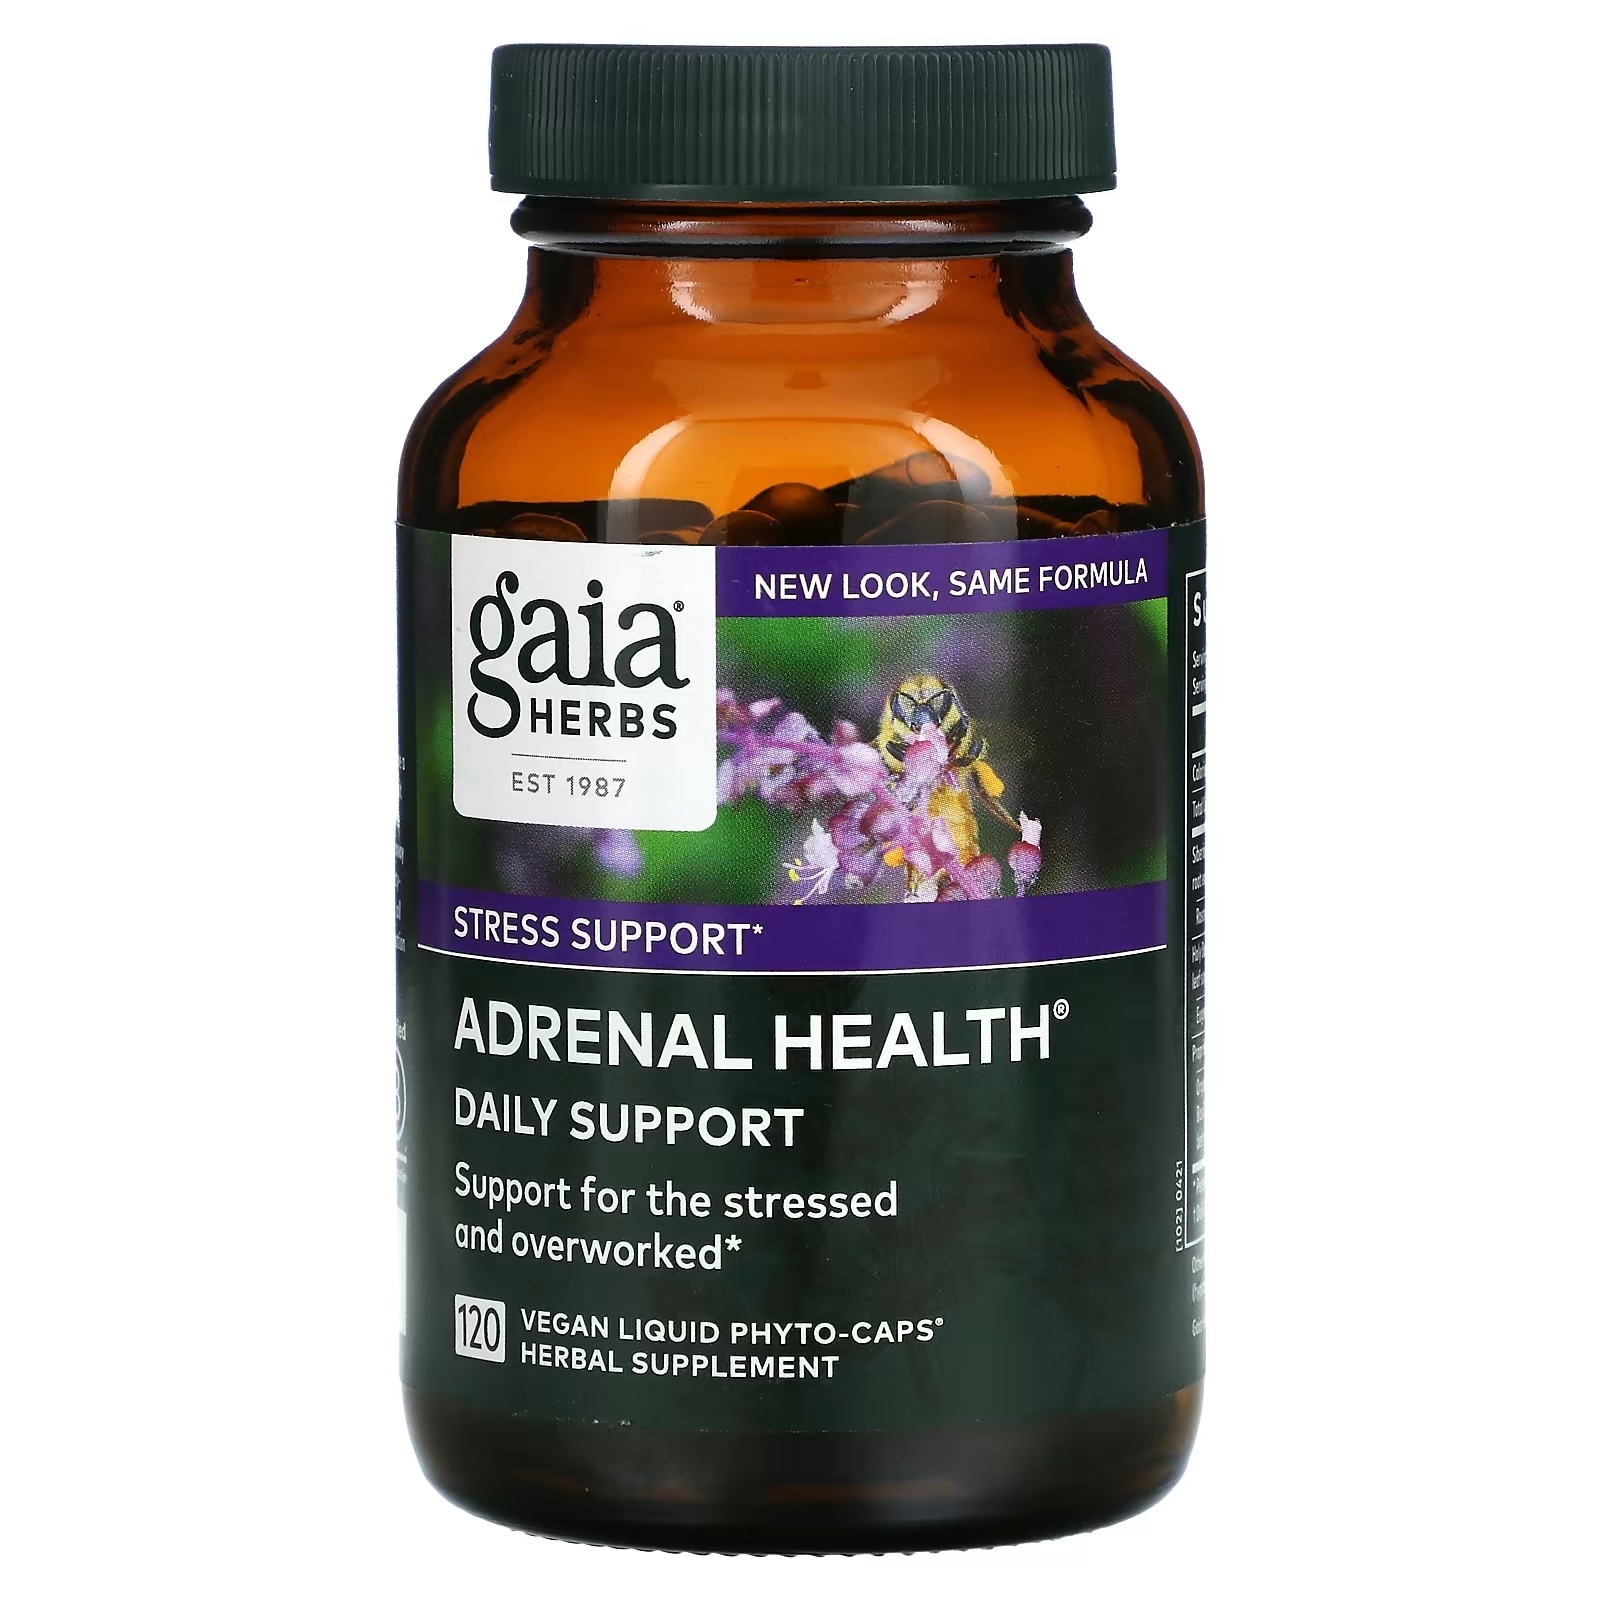 Gaia Herbs Adrenal Health ежедневная поддержка, 120 растительных капсул gaia herbs adrenal health ежедневная поддержка 60 веганских жидких фито капсул